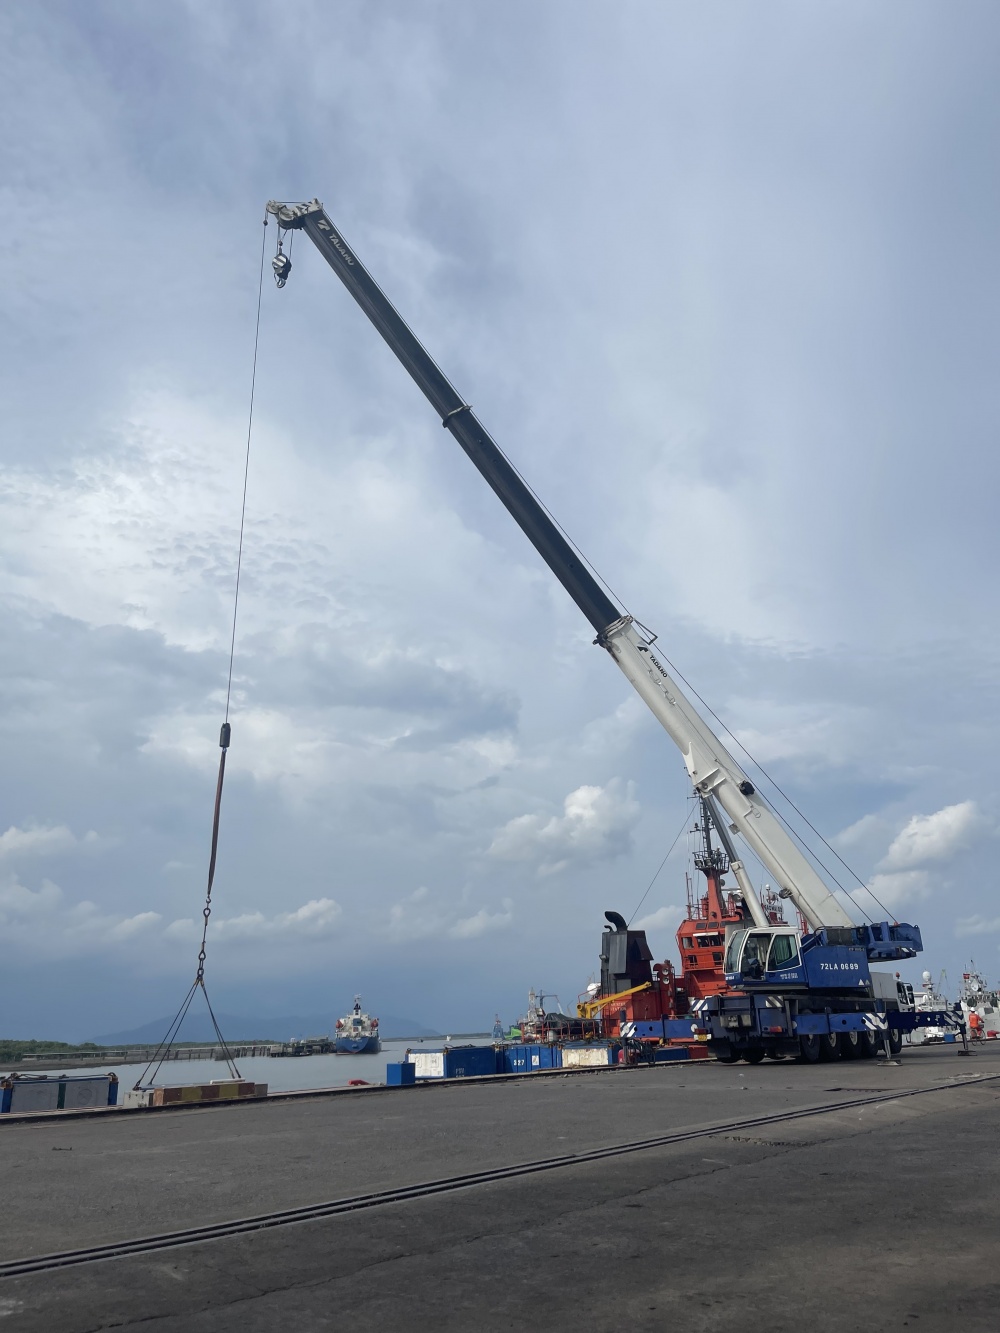 09-HNG-AD-0001: Cẩu bánh lốp lên hàng tàu Sao Mai 02 đi biển, cảng Vietsovpetro.